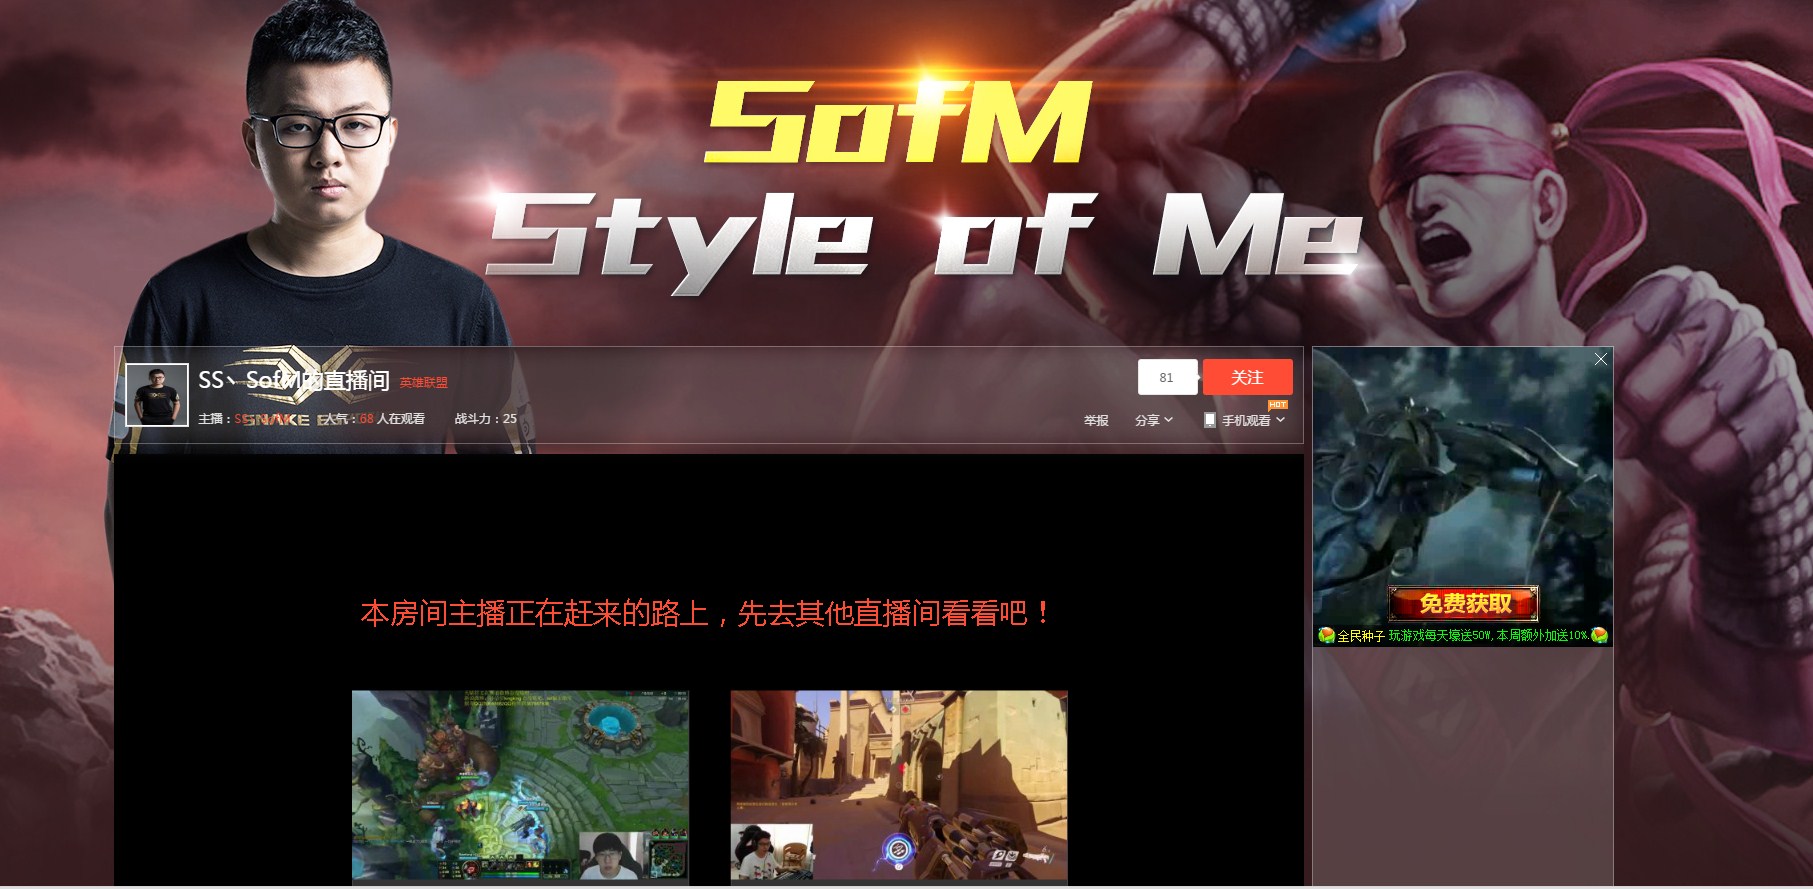 SofM sở hữu kênh stream tại Trung Quốc